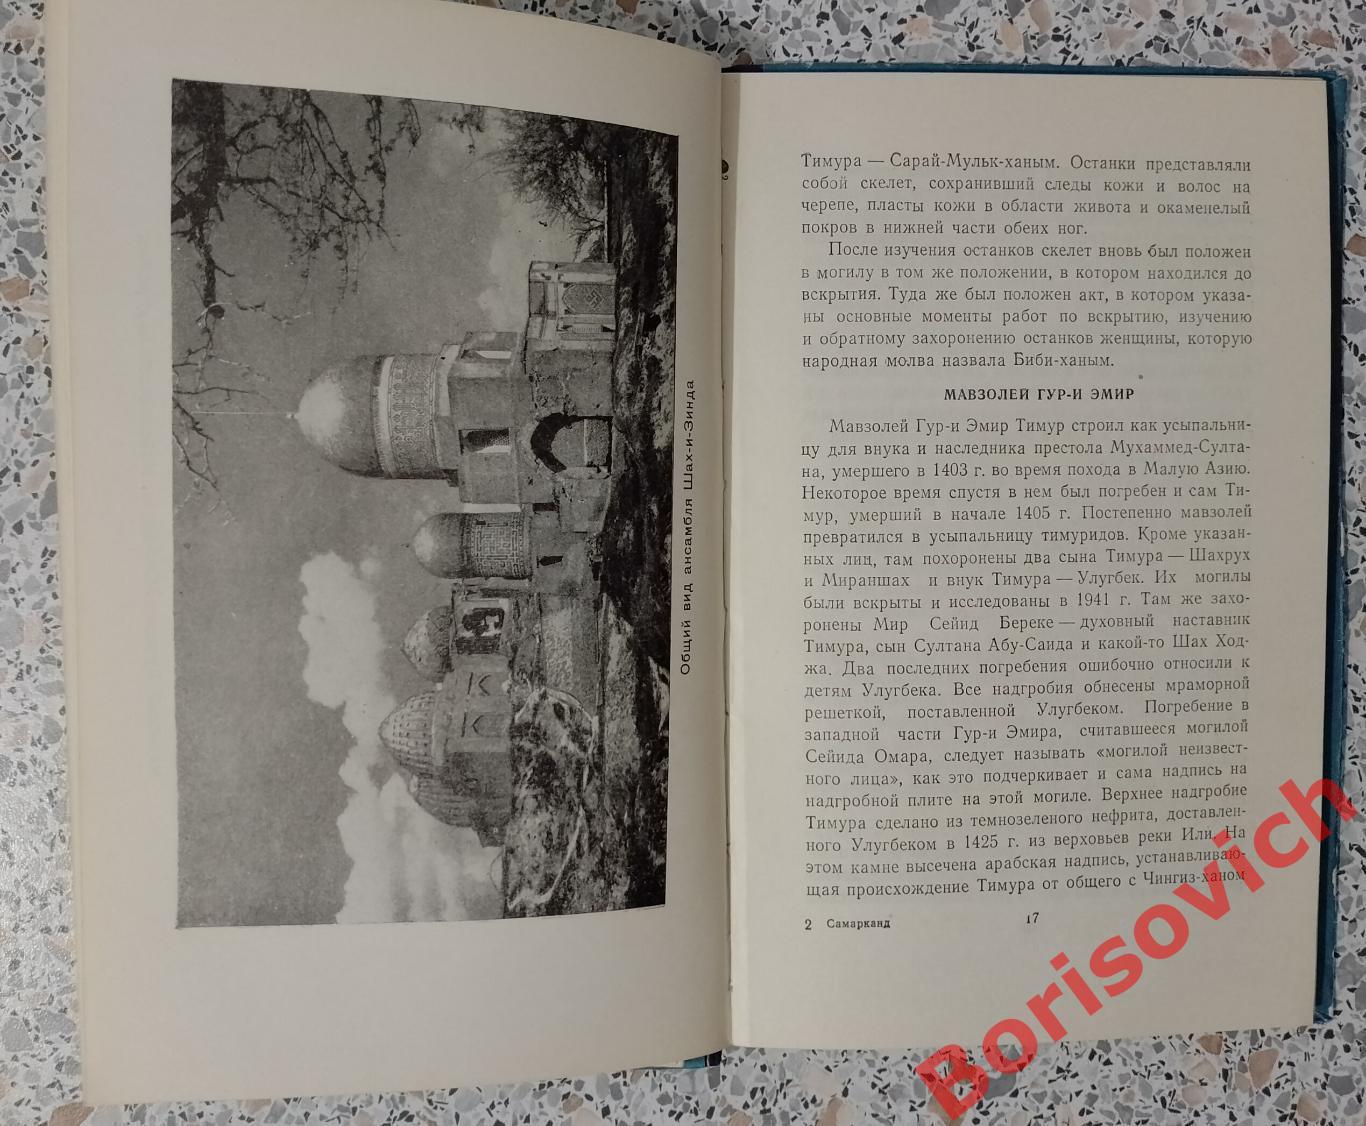 САМАРКАНД Краткий справочник - путеводитель Ташкент 1956 г 103 стр Тираж 10 000 2